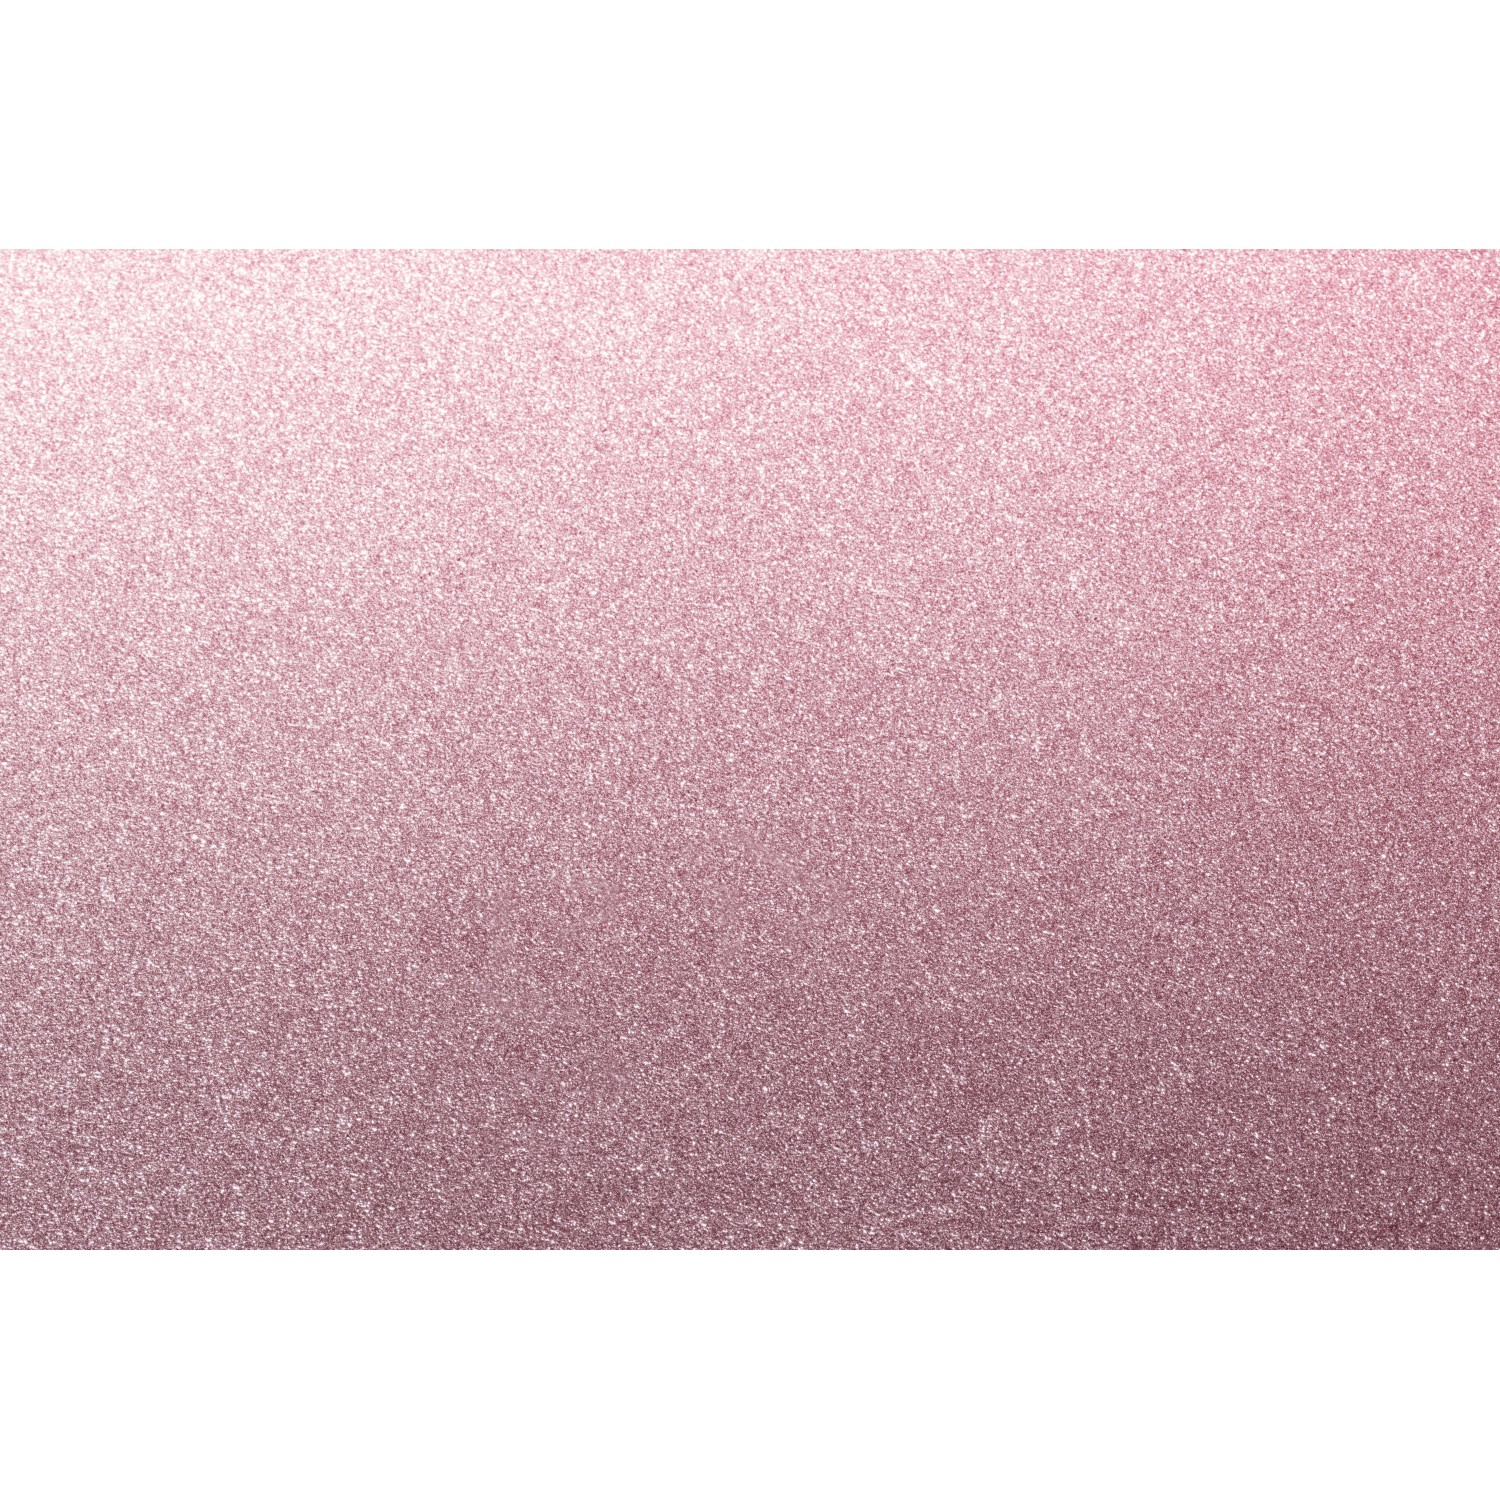 D-c-fix® Selbstklebefolie Glitter Pink 67,5 x 200 cm kaufen bei OBI